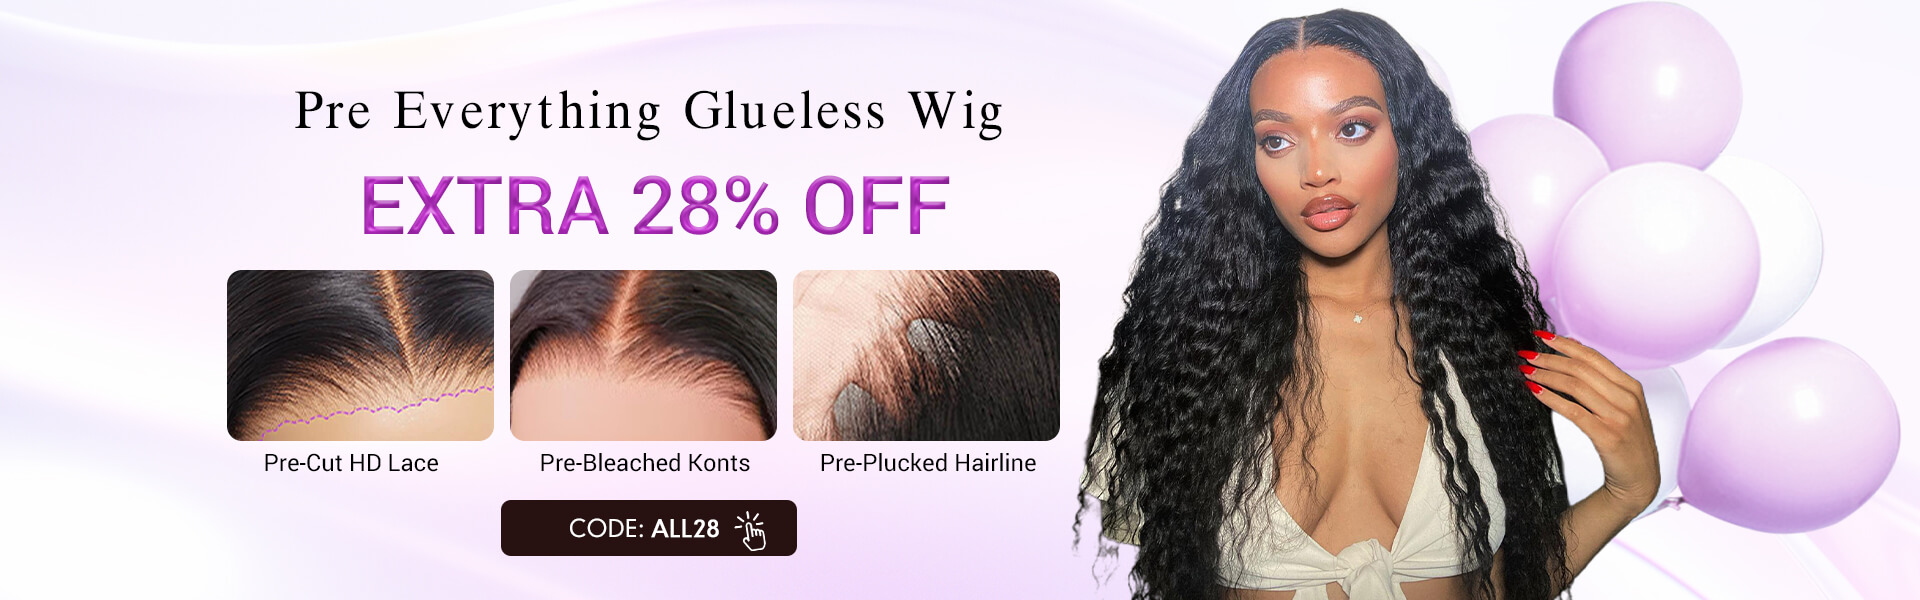 glueless wig super sale (1)